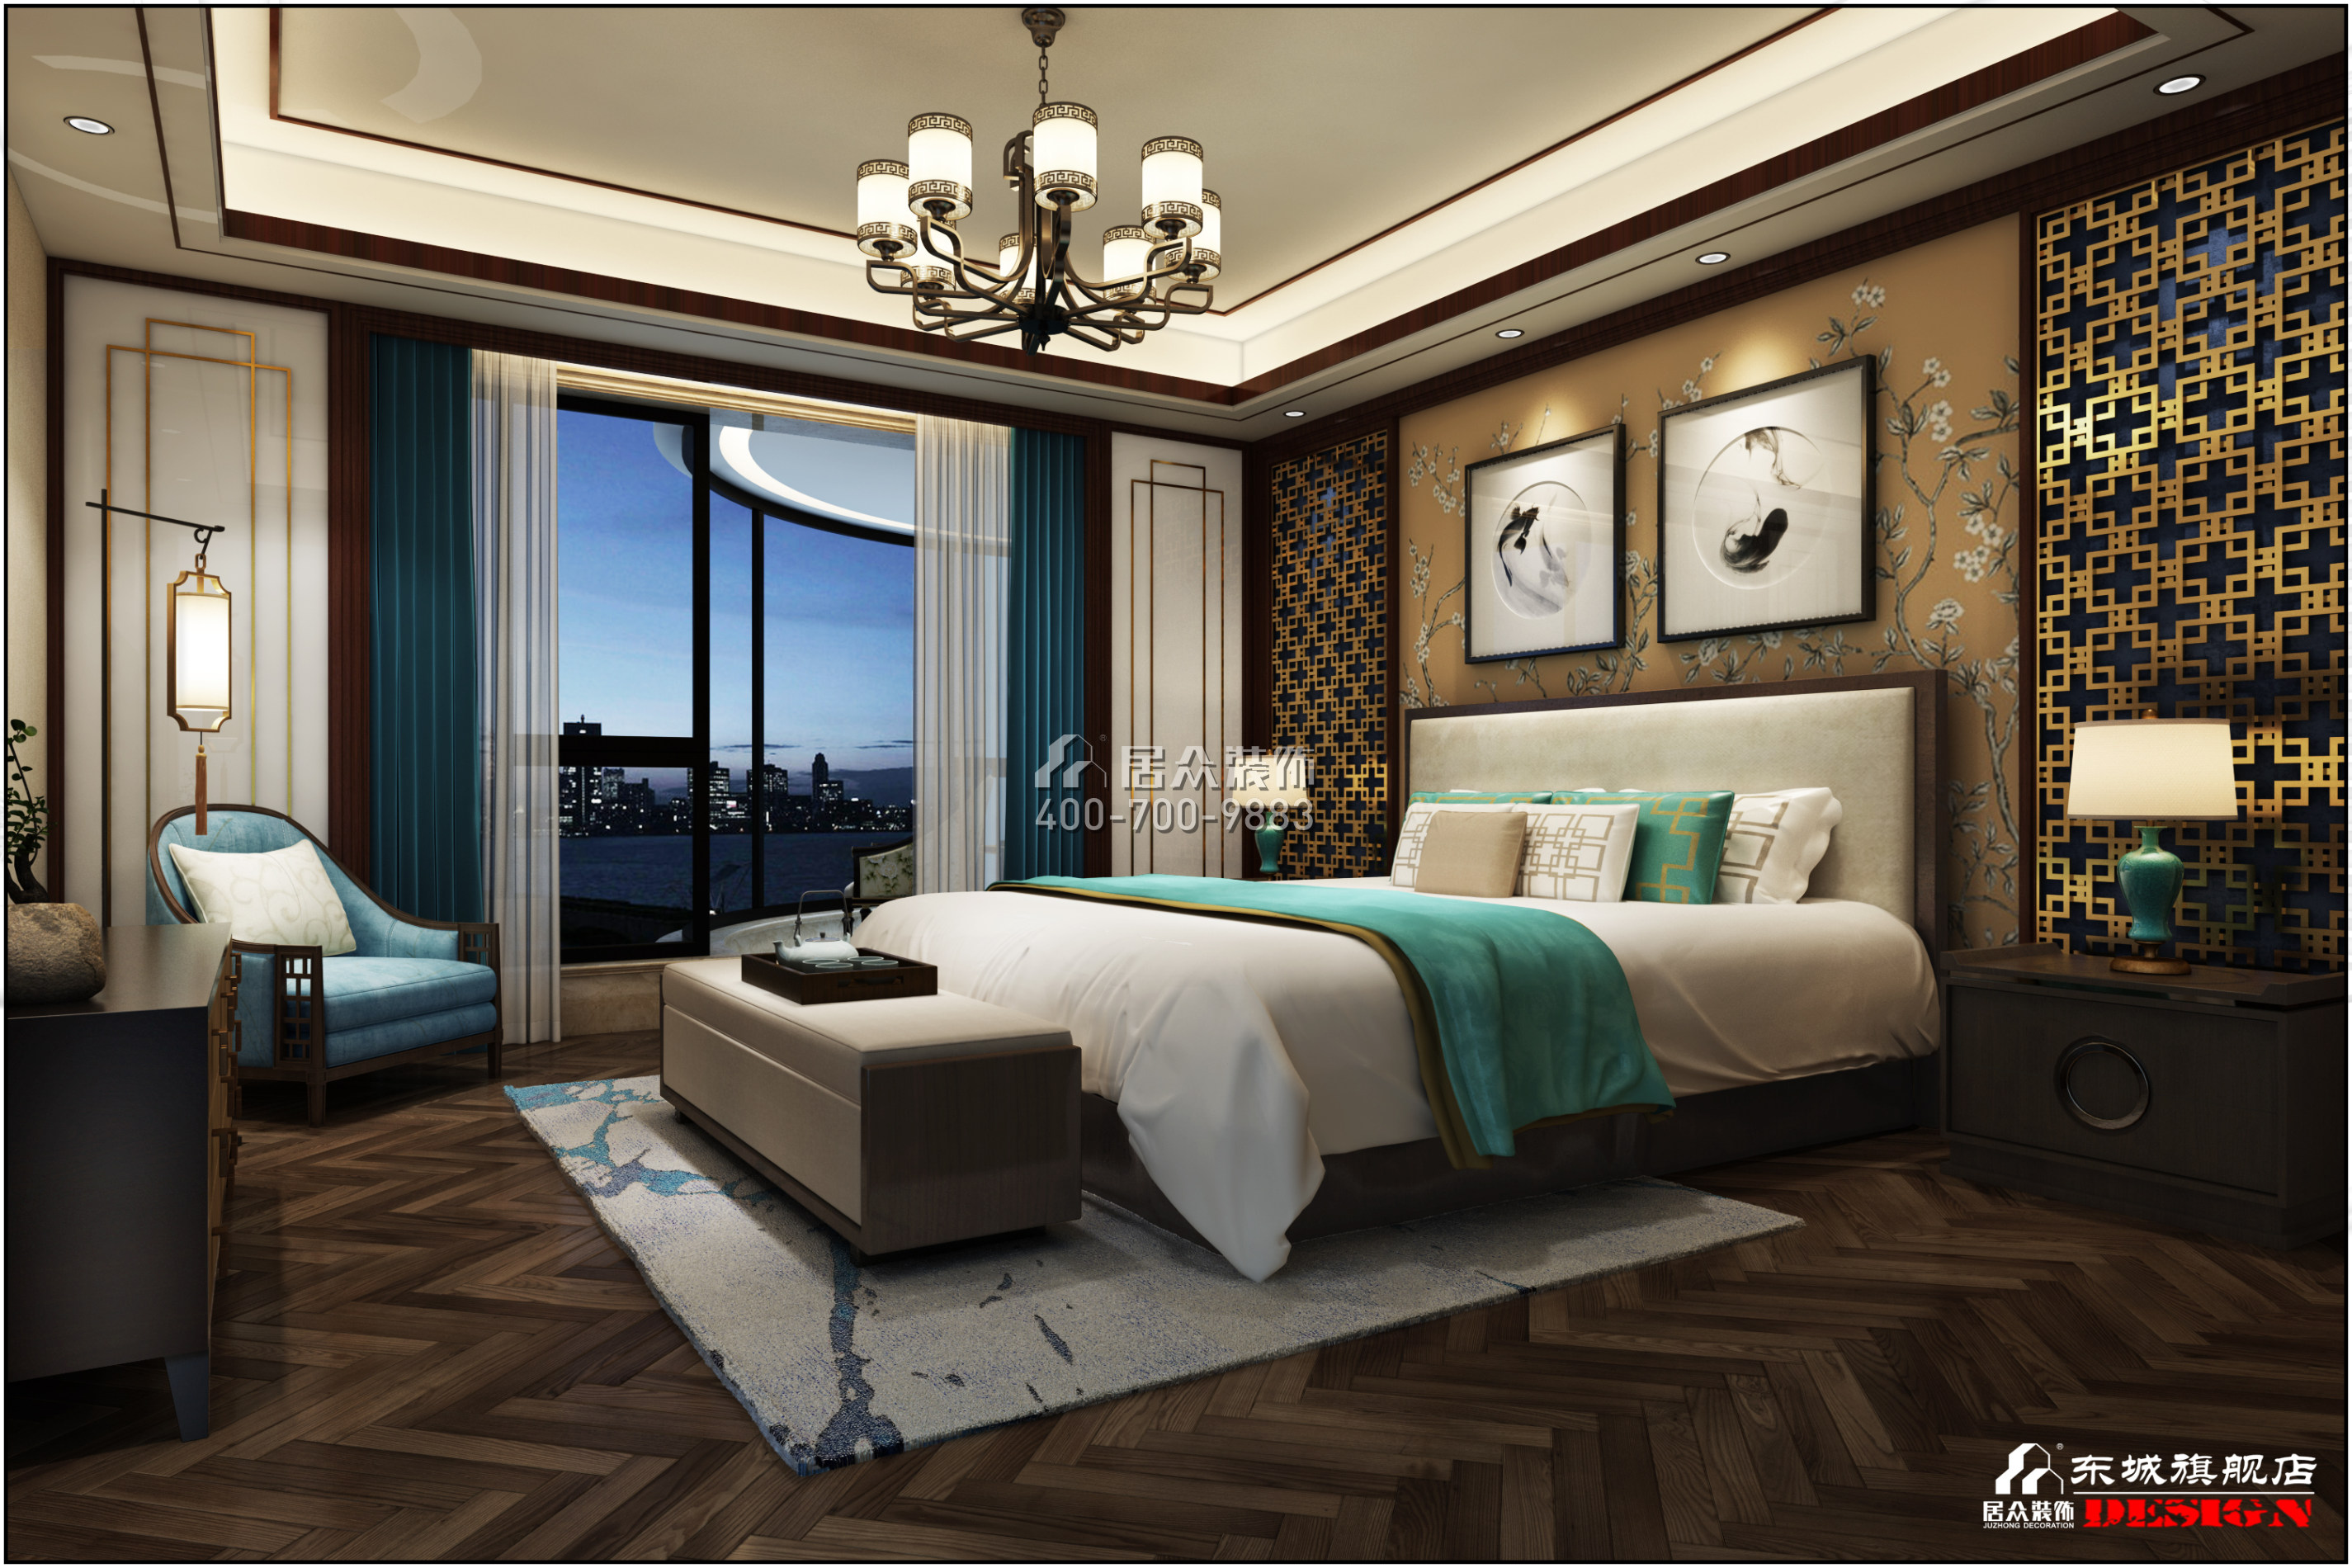 湘域熙岸303平方米中式风格平层户型卧室装修效果图